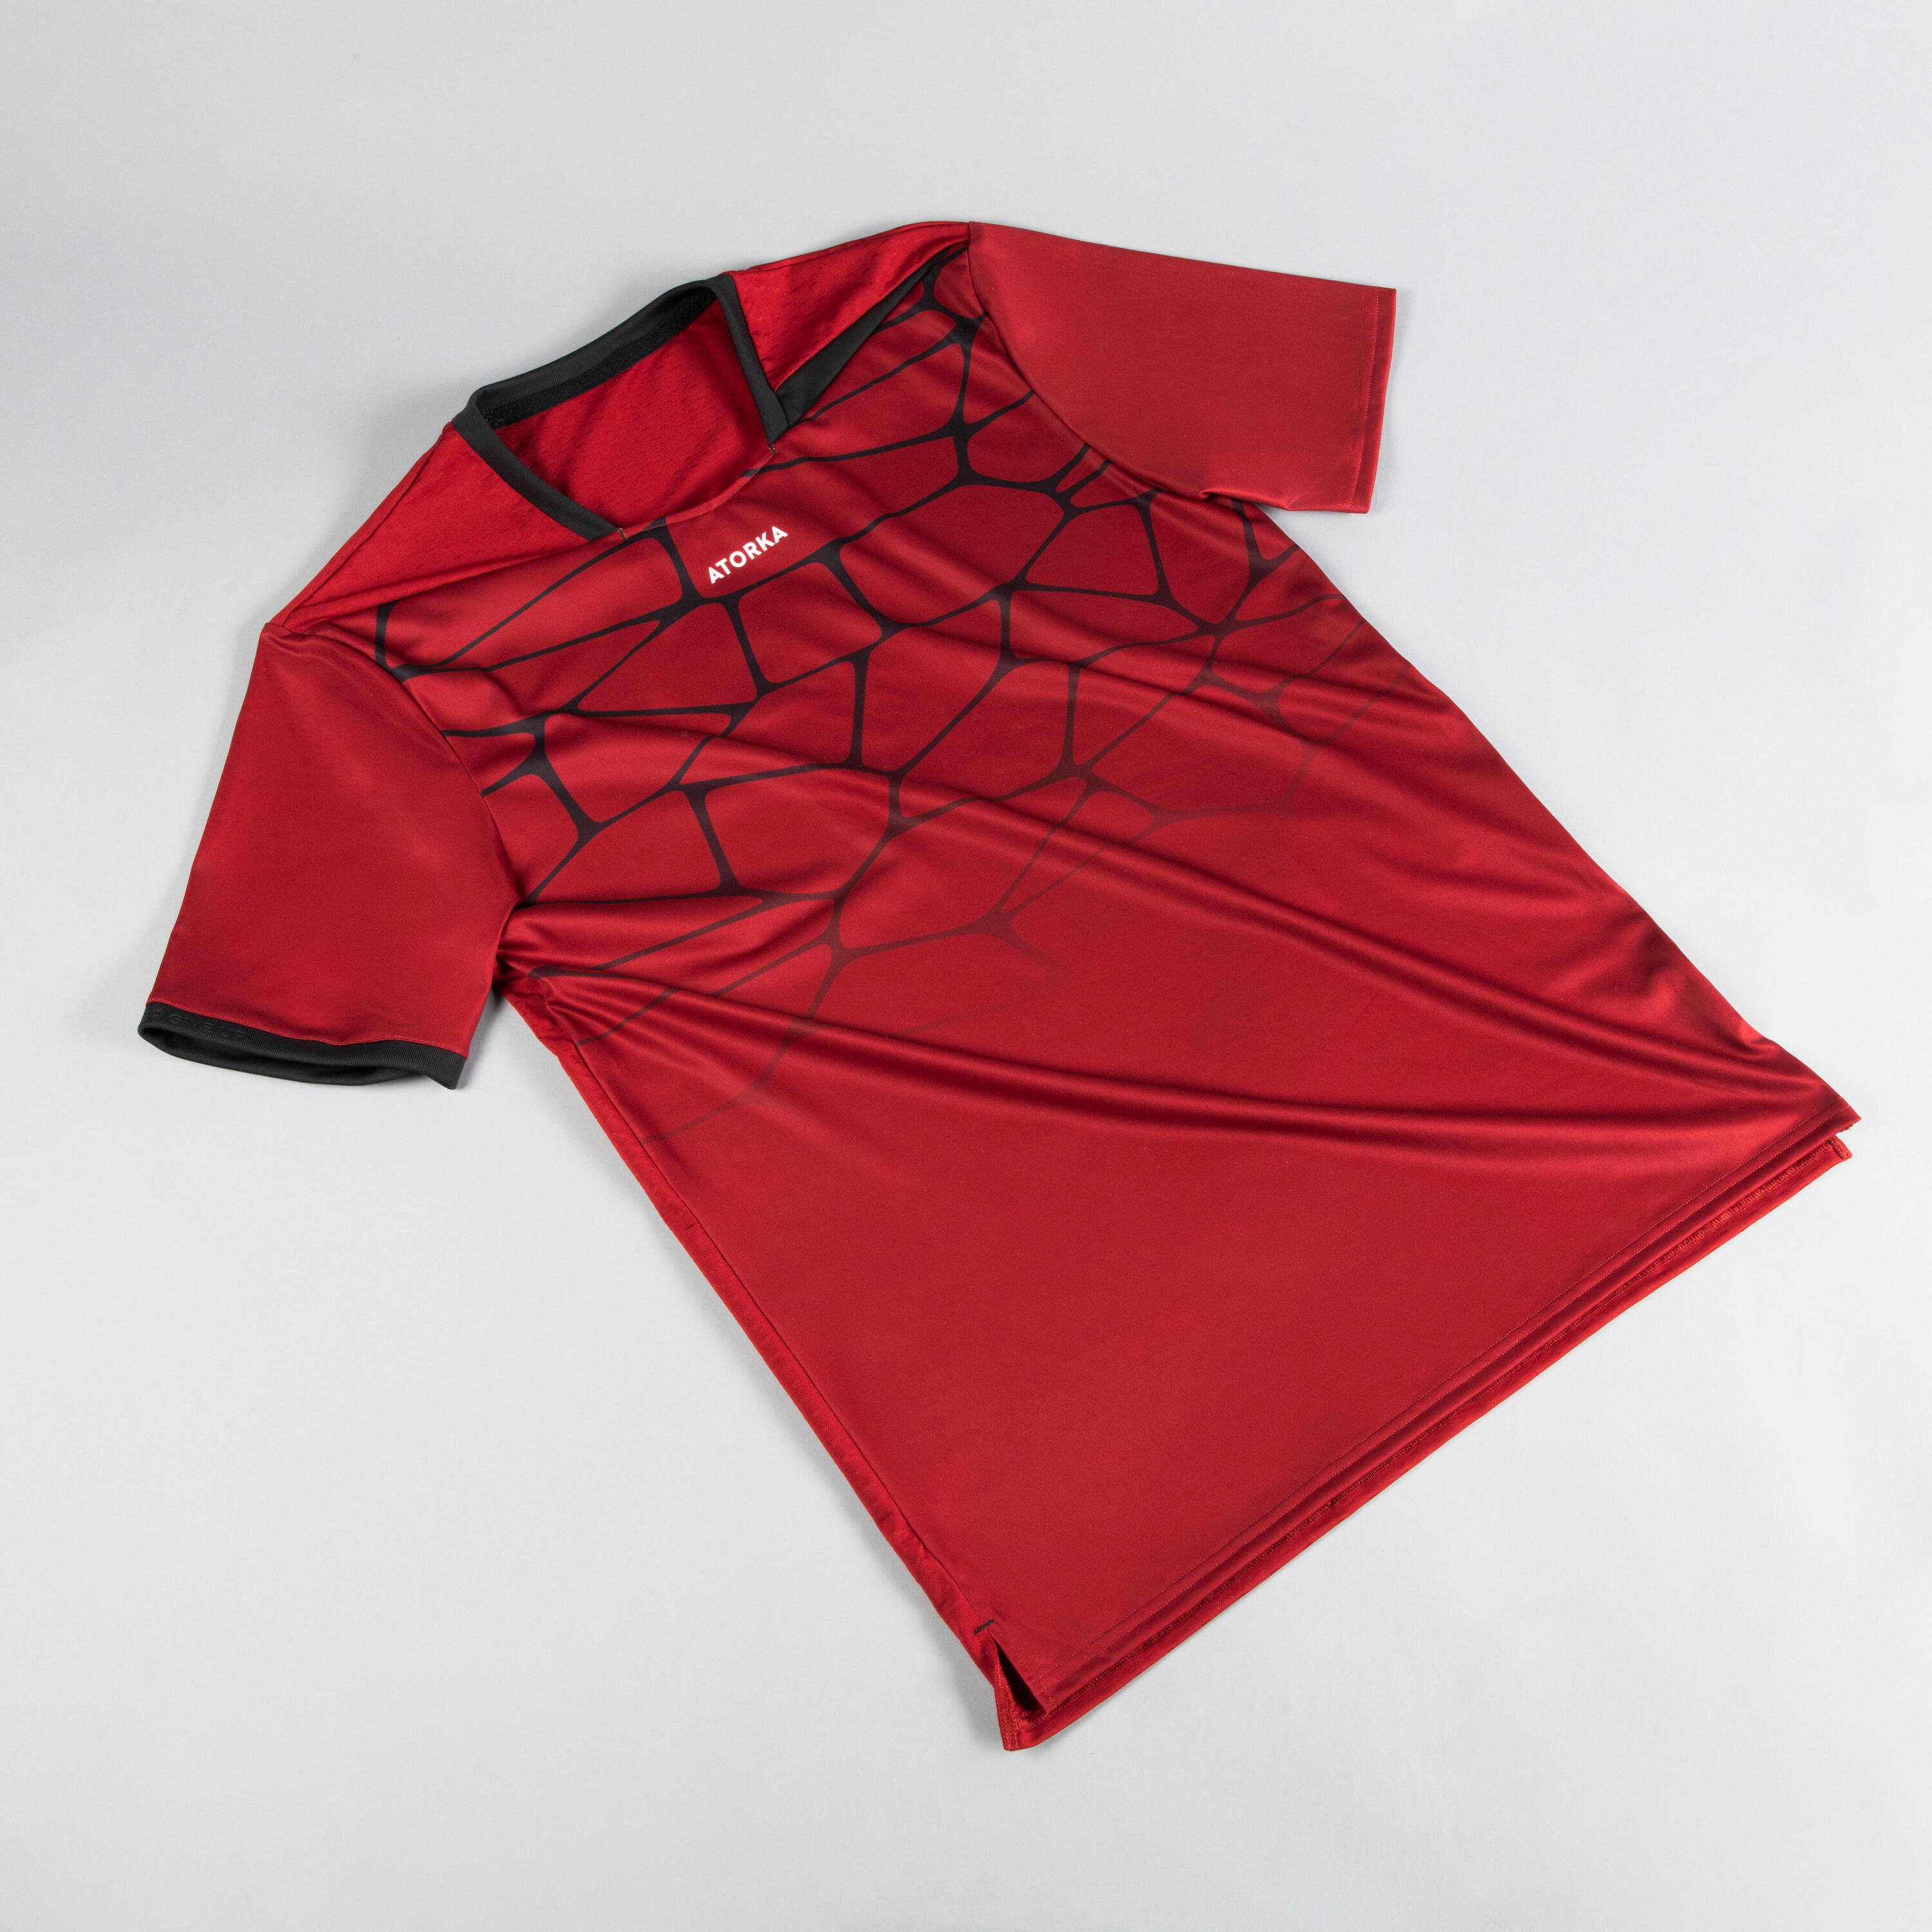 Men's Short-Sleeved Handball Jersey H500 - Red/Black 4/12